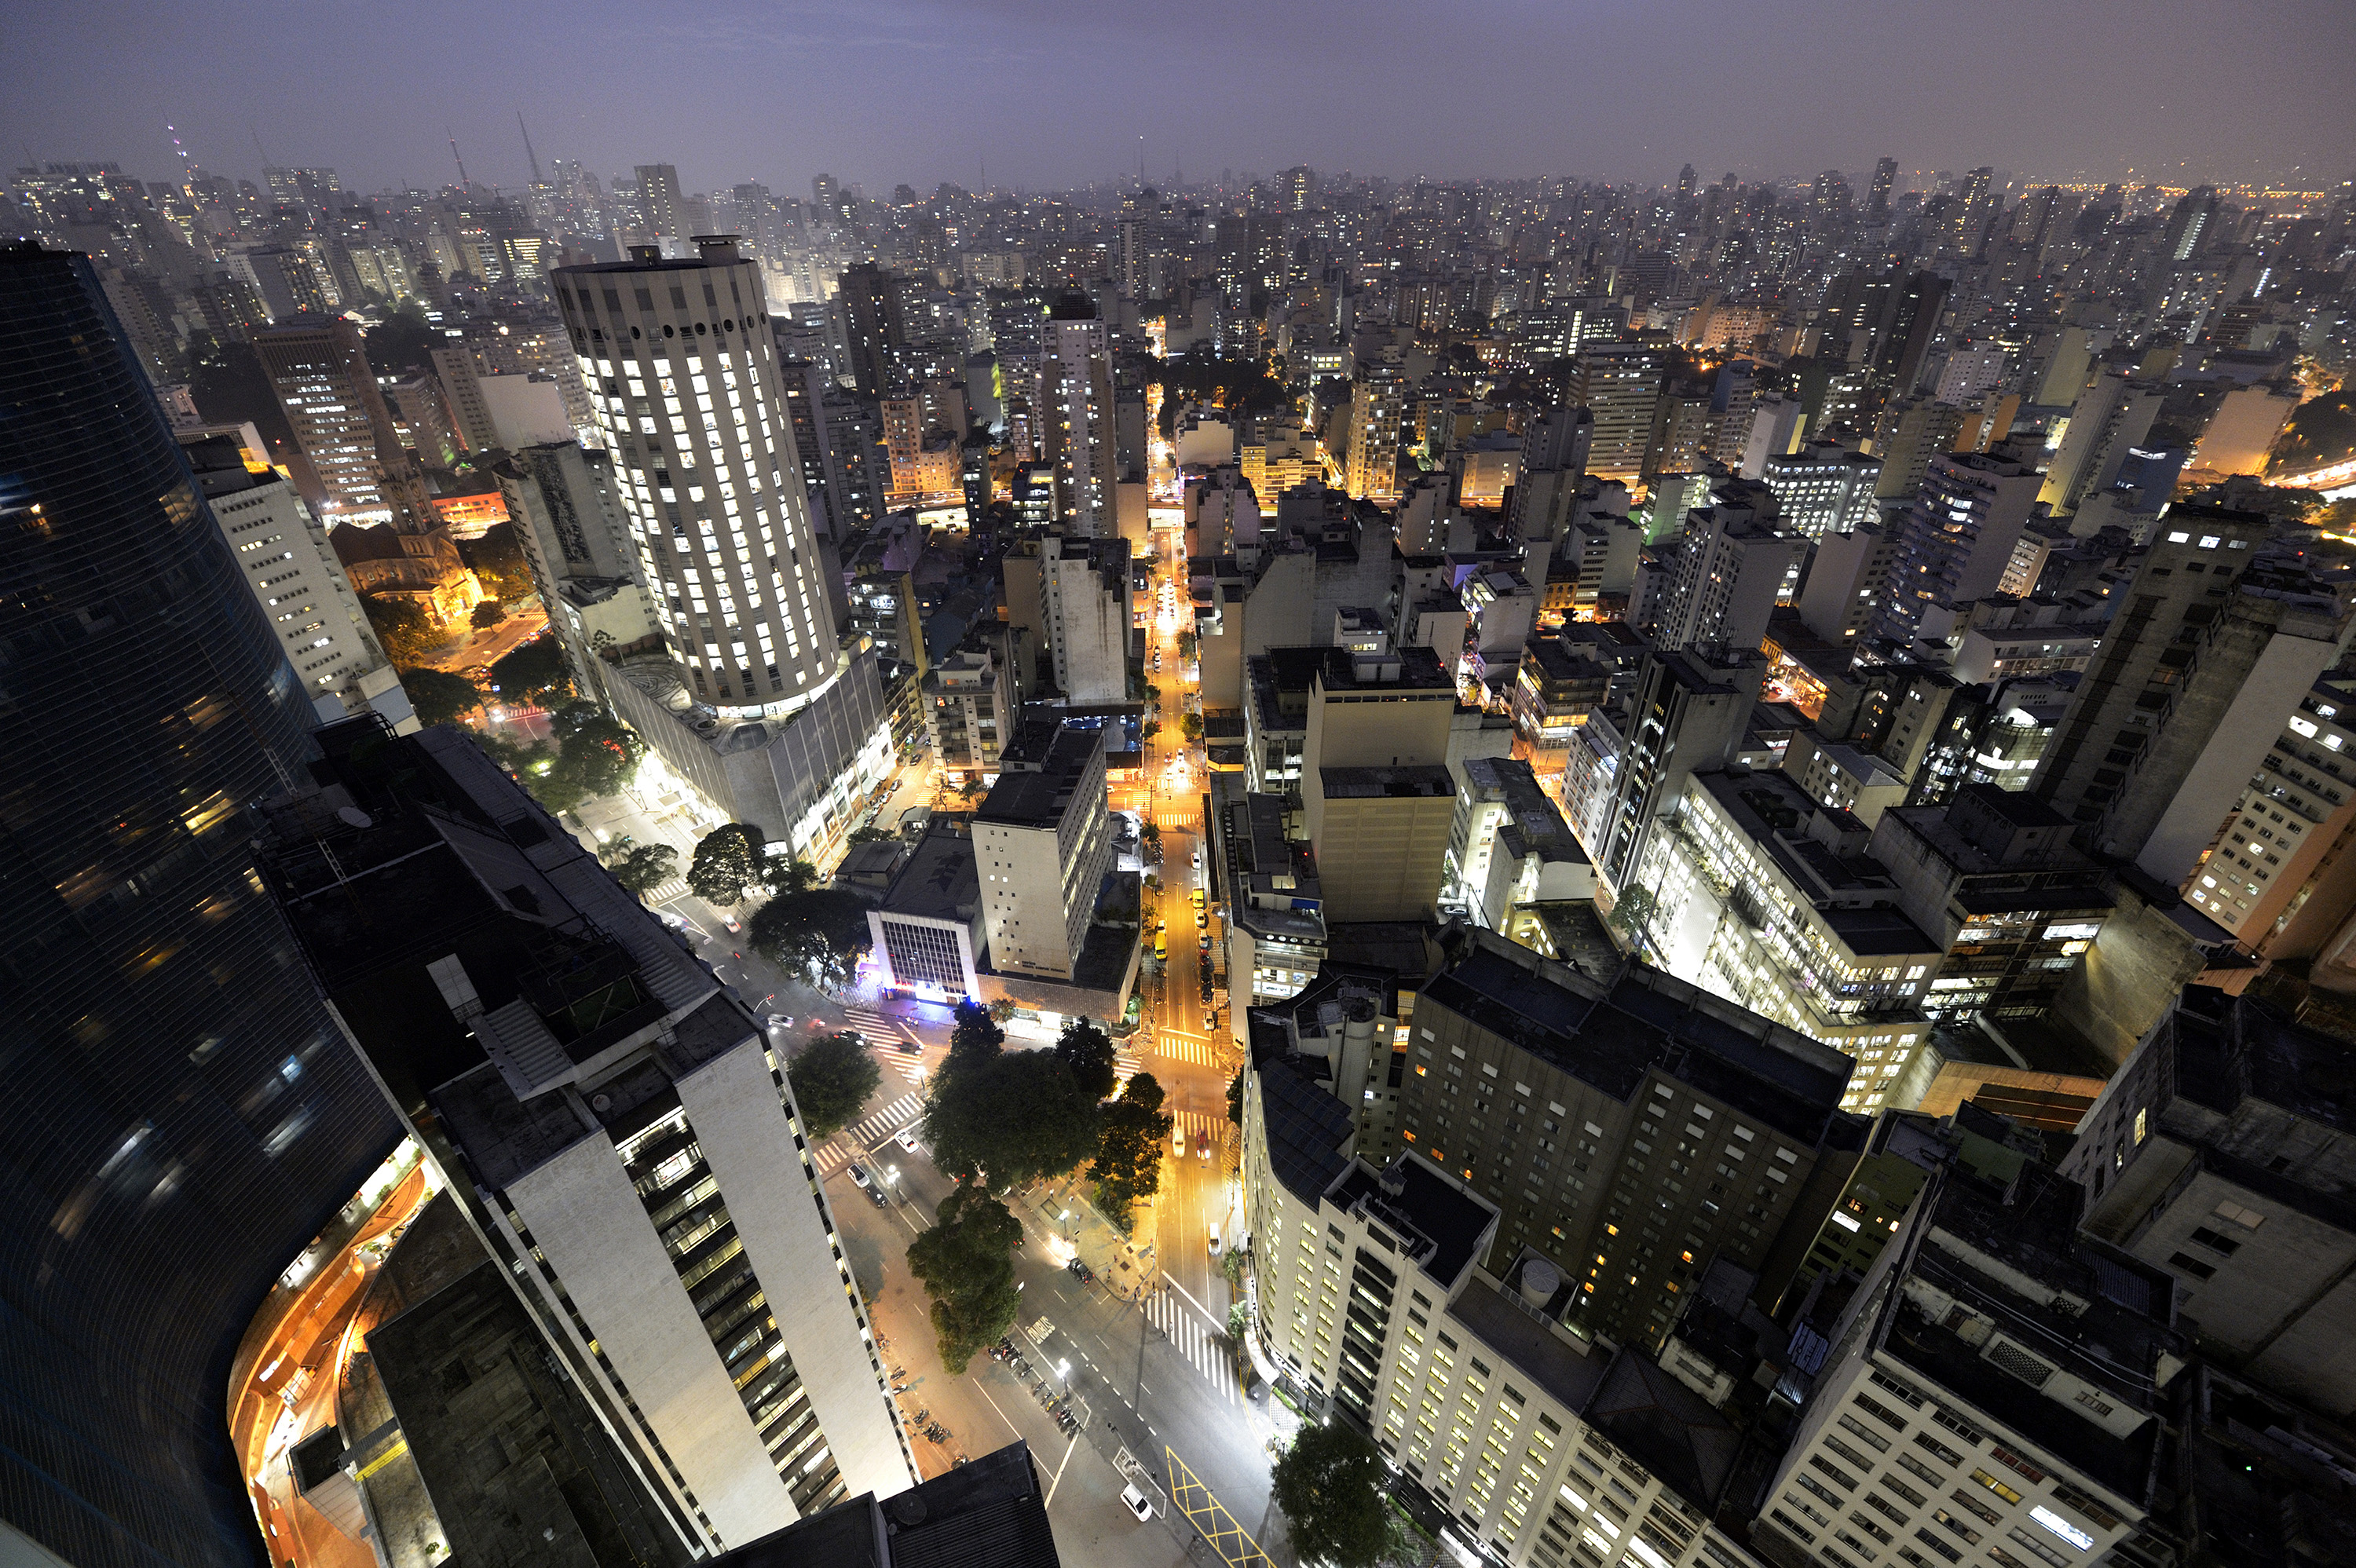 São Paulo cityscape at night